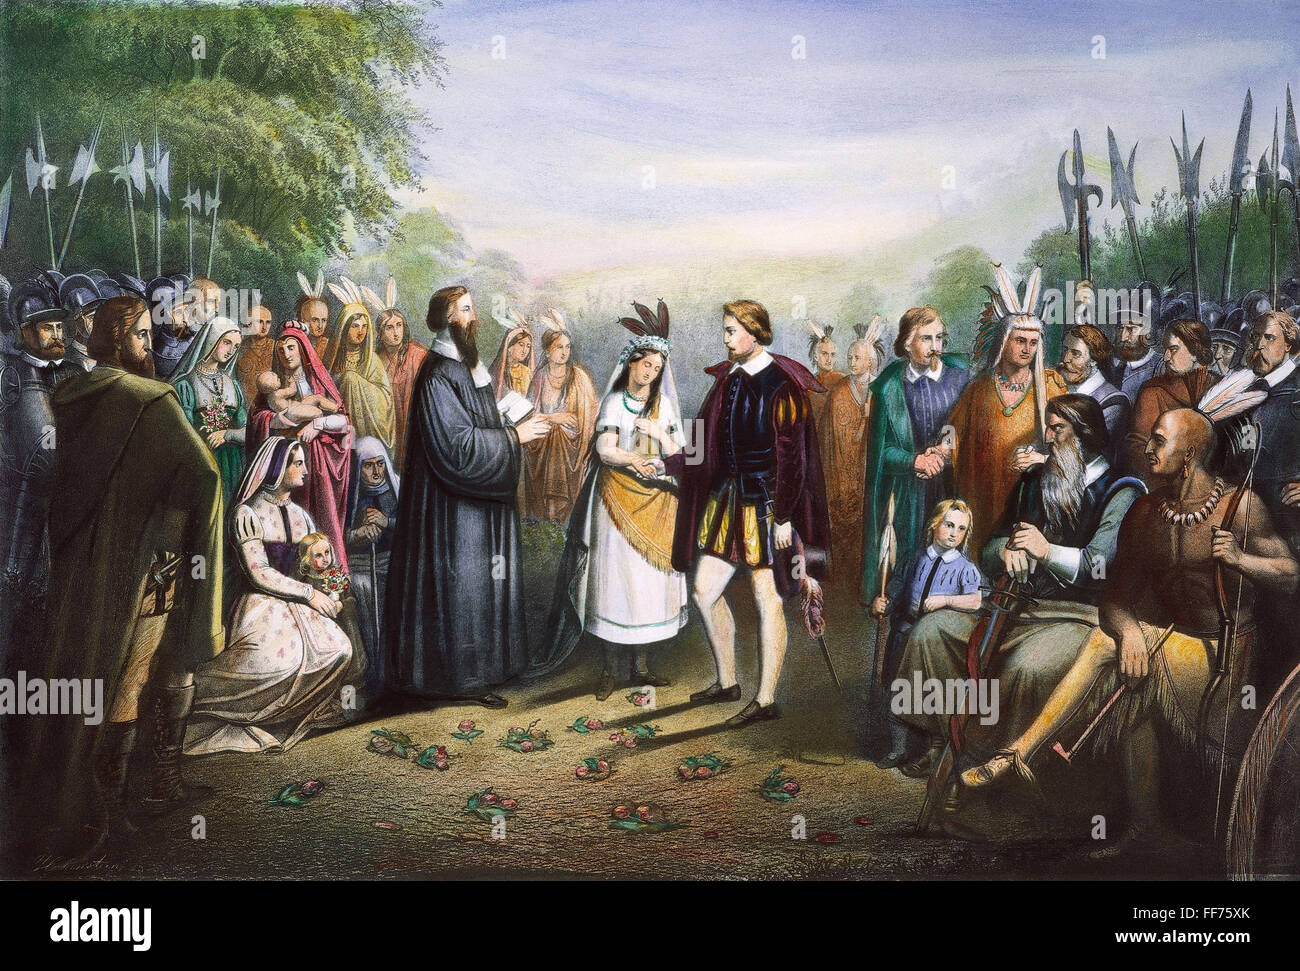 POCAHONTAS ET JOHN ROLFE. /Nla mariage de Pocahontas et de John Rolfe à Jamestown, en Virginie, en avril 1614. Lithographie, 19ème siècle. Banque D'Images